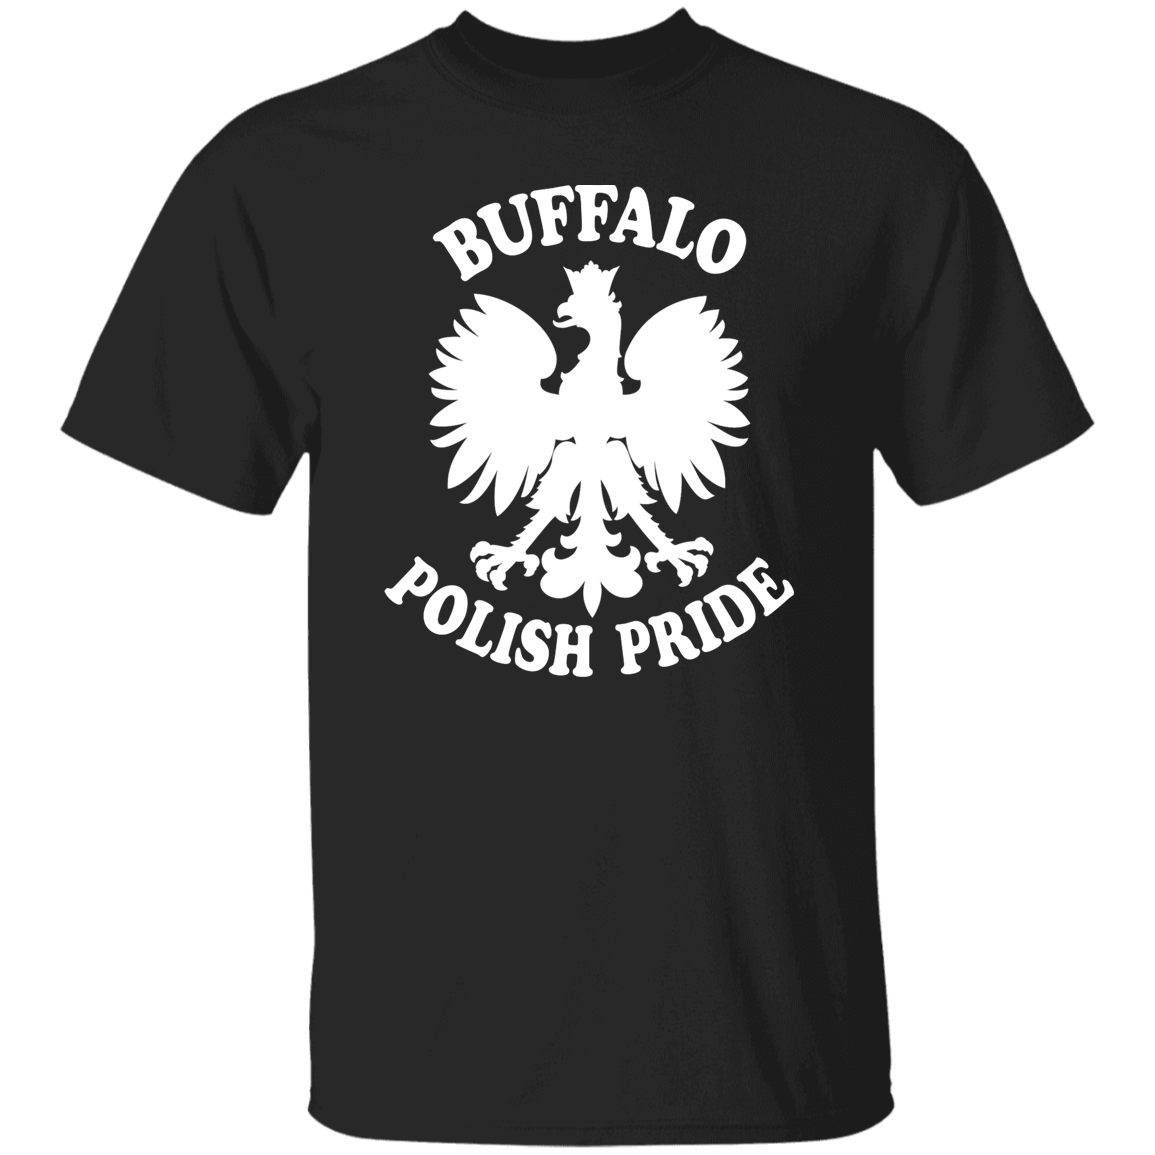 Buffalo Polish Pride Apparel CustomCat G500 5.3 oz. T-Shirt Black S